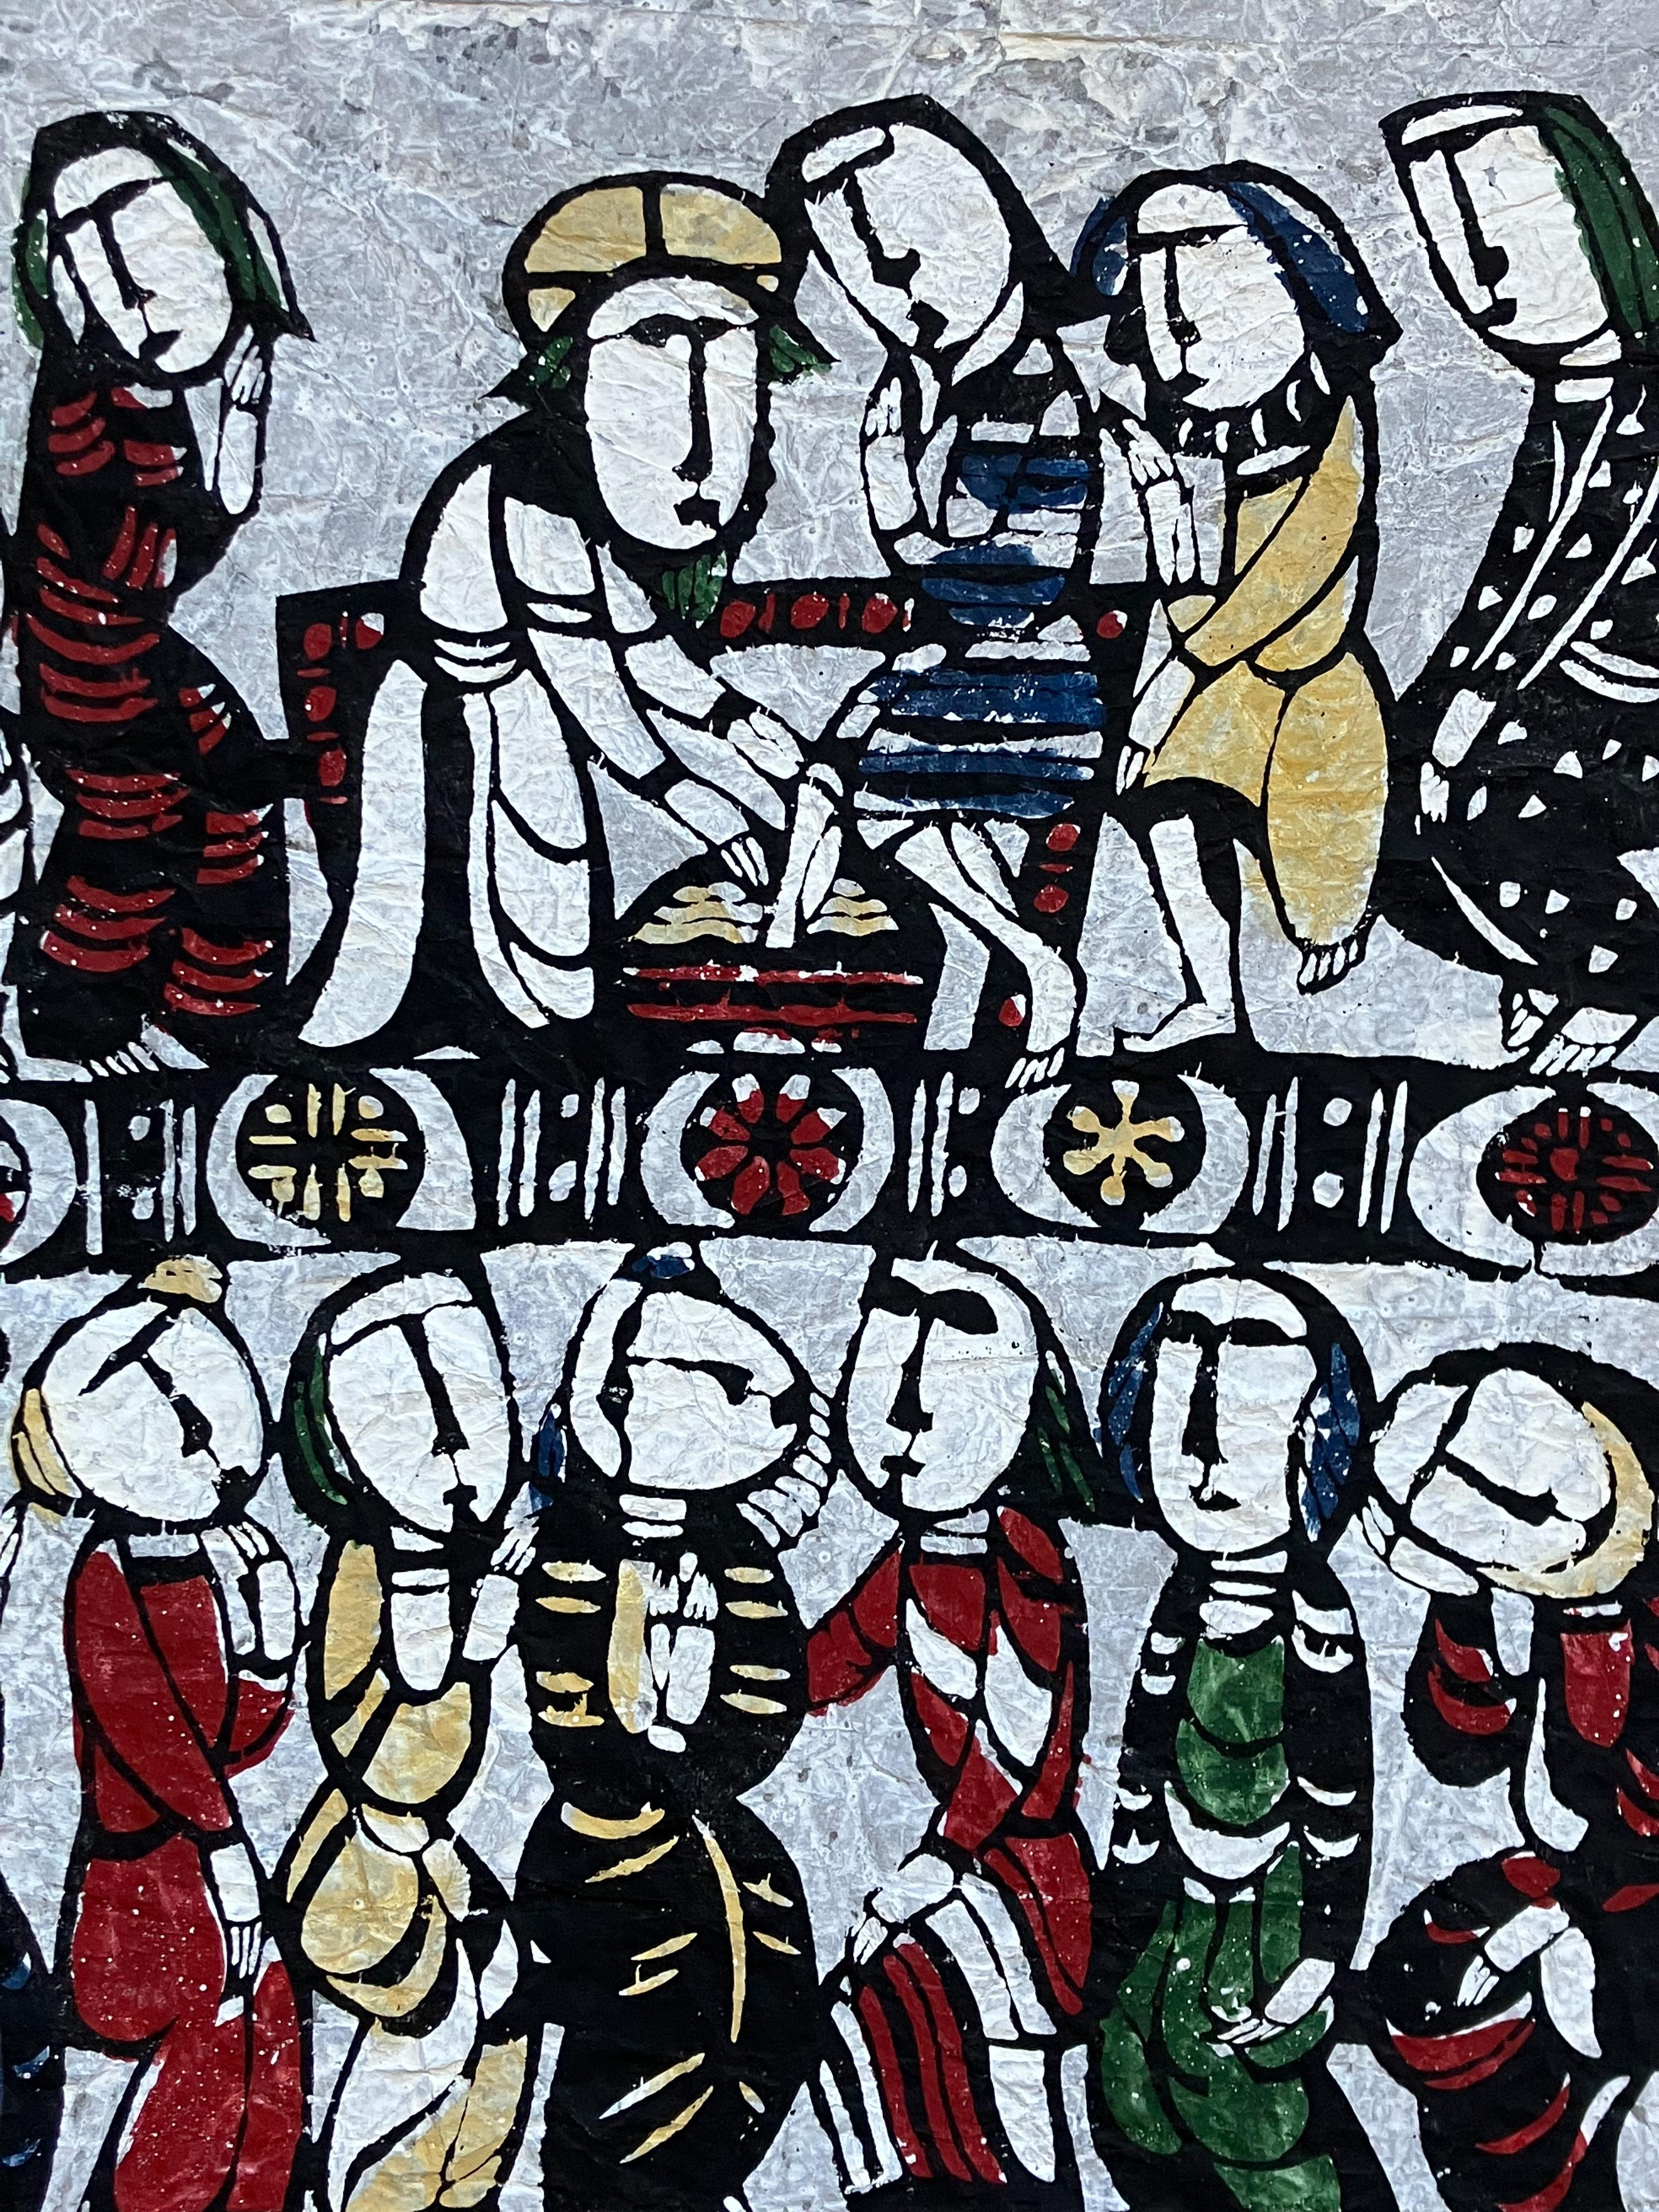 Artiste : Sadao Watanabe (1913-1996)
Titre : Le Christ lavant les pieds des disciples
Année : 1970
Médium : Teinture au pochoir japonais (kappazuri) avec coloration à la main
Papier : papier washi
Taille de la feuille : 27.75 x 23.25 pouces 
Taille